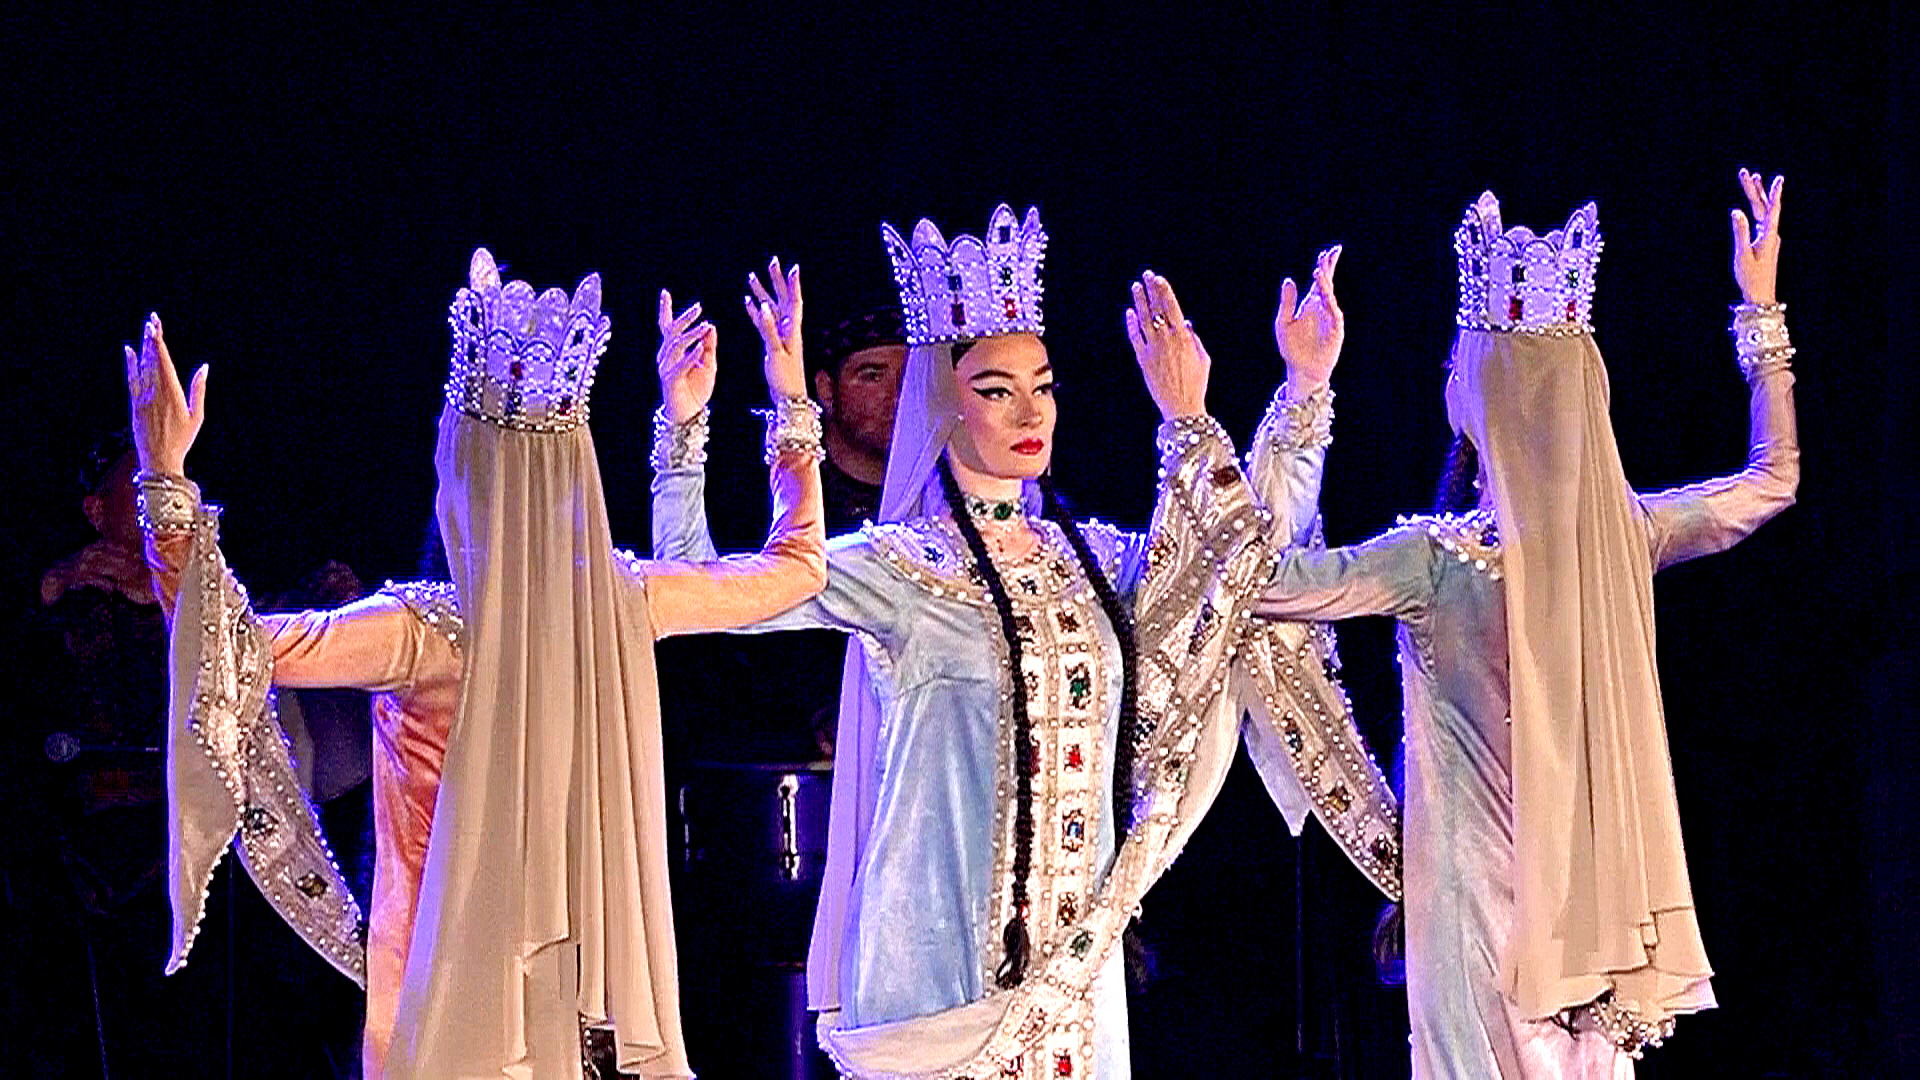 Национальный балет Грузии привёз танцевальное представление в Боснию